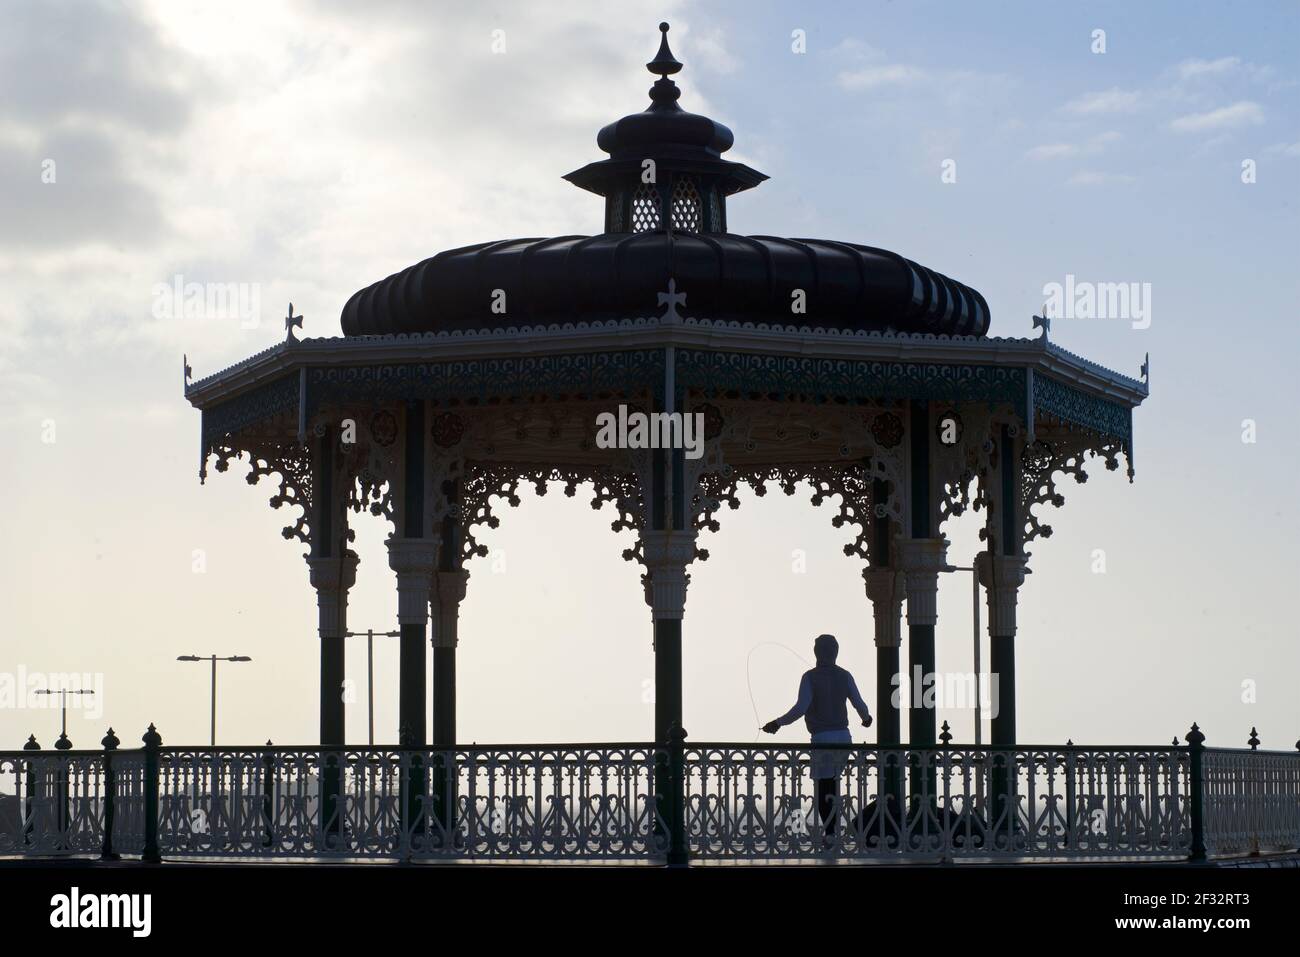 Kiosque à musique victorien de Brighton. Brighton & Hove, East Sussex, Angleterre. Homme sautant. Exercice du matin. Banque D'Images